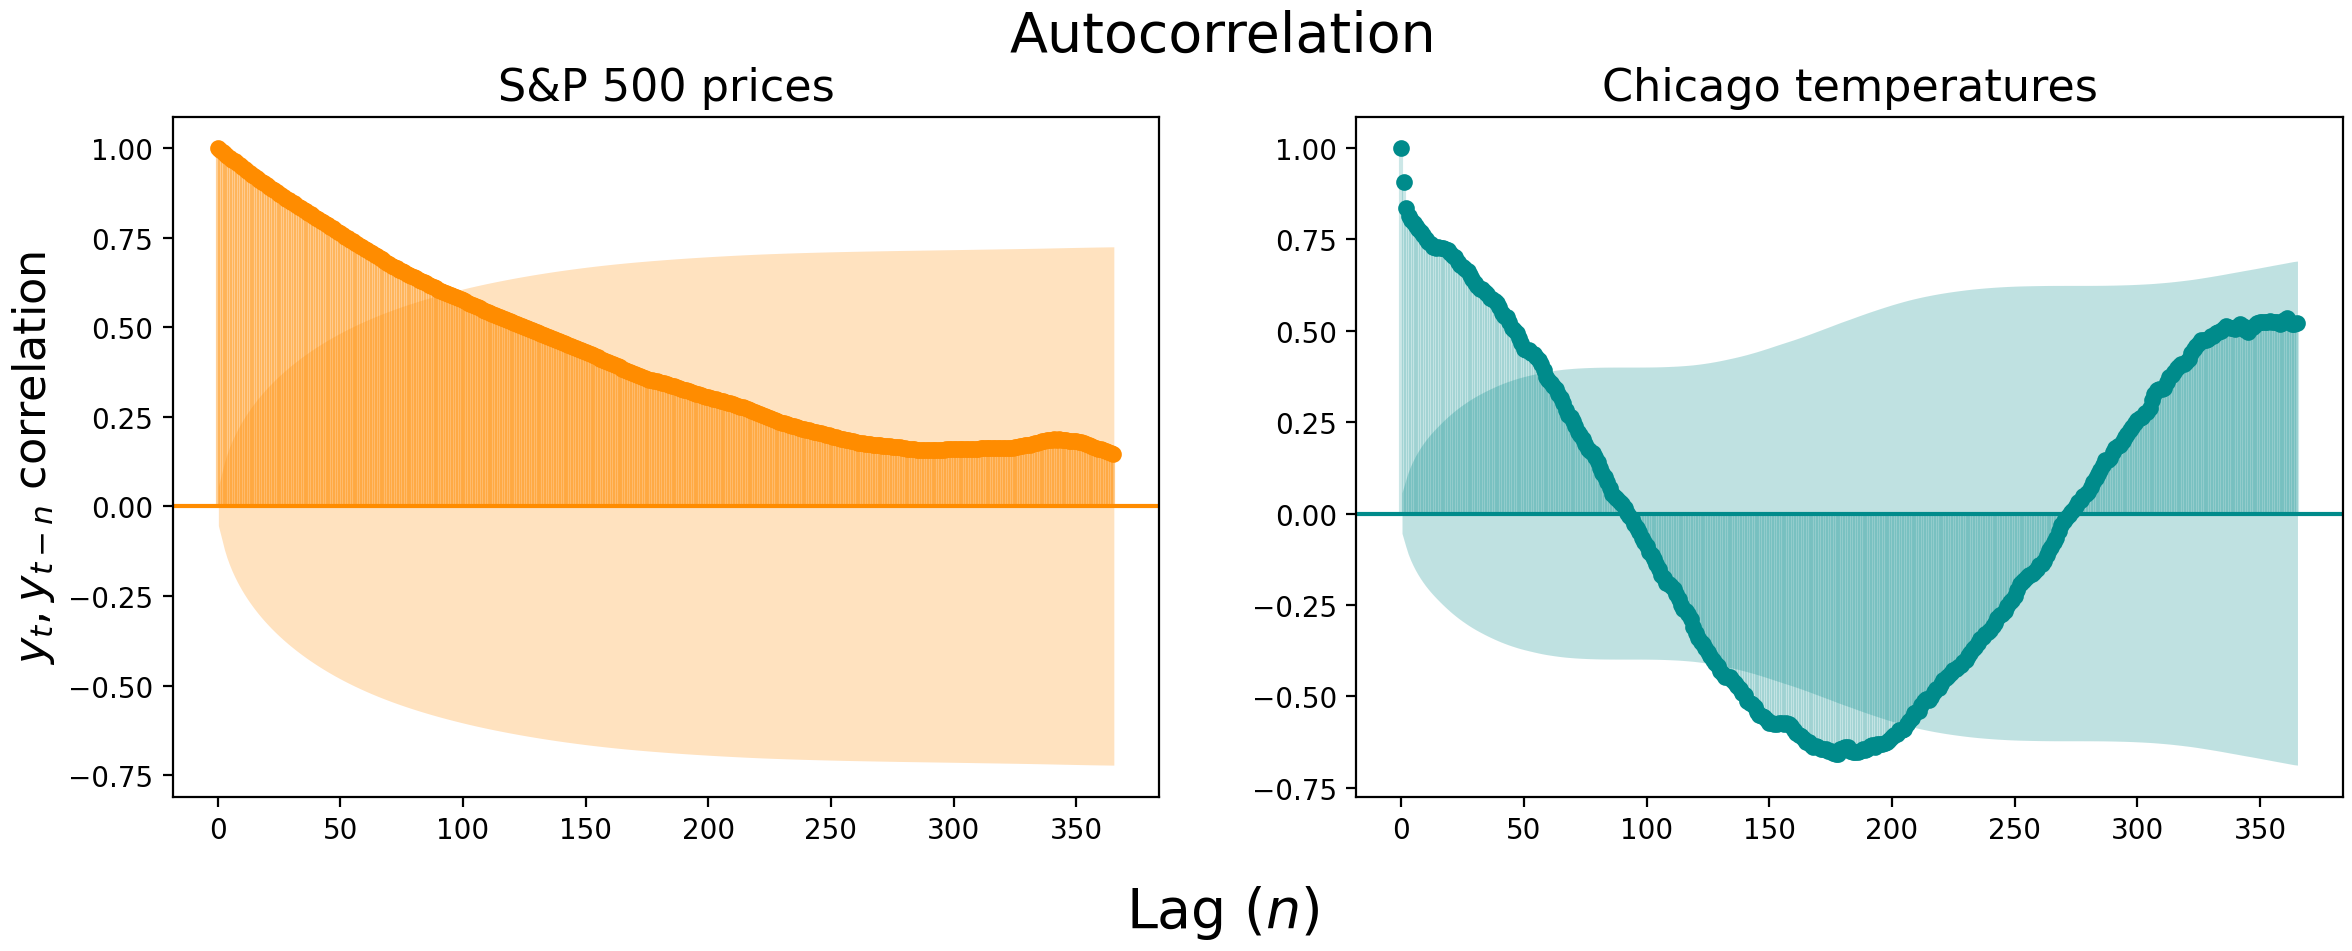 Examples of autocorrelation plots